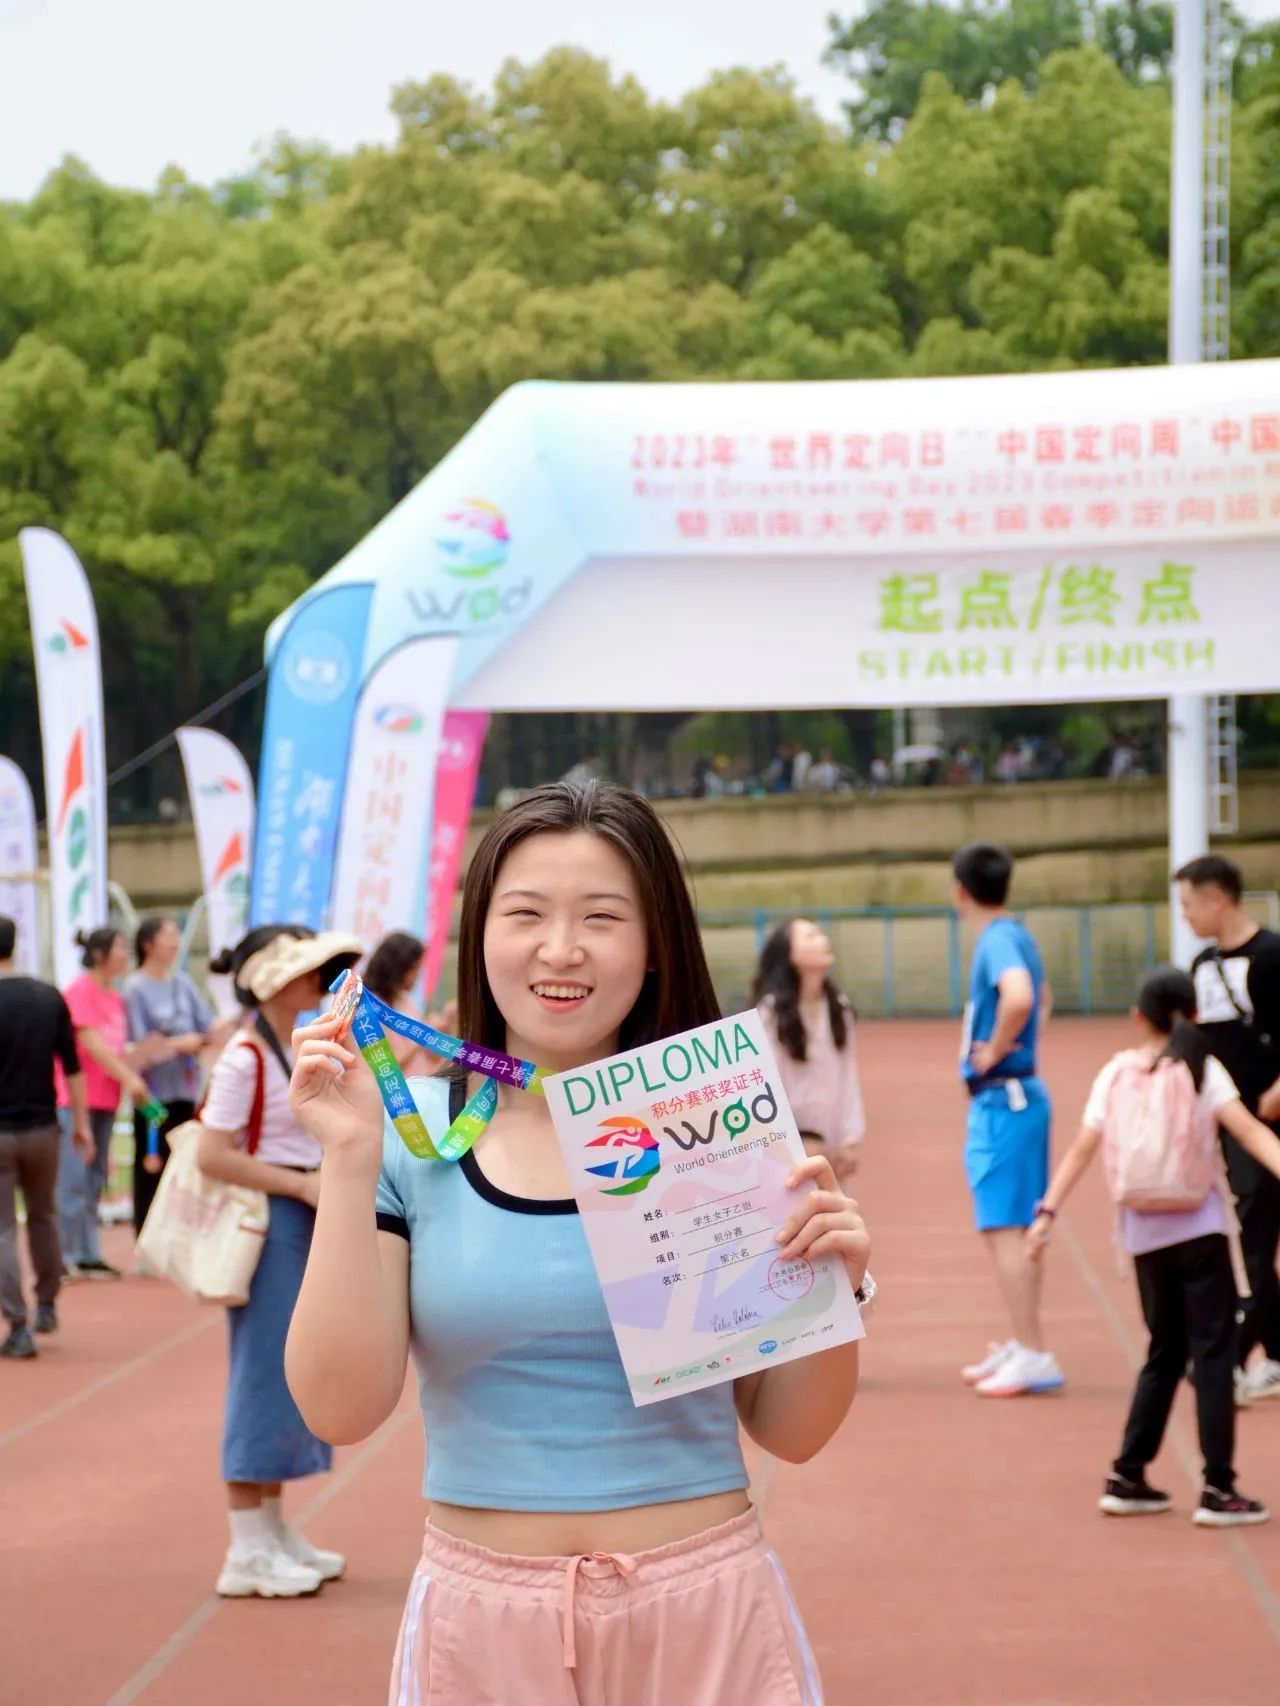 湖南大学是中国开展定向运动最早的高校之一，现已成功举办多届定向运动大赛。奔跑在美丽的校园和岳麓山下，参赛者在充满活力和内涵的体育活动中感受健康生活方式的魅力。